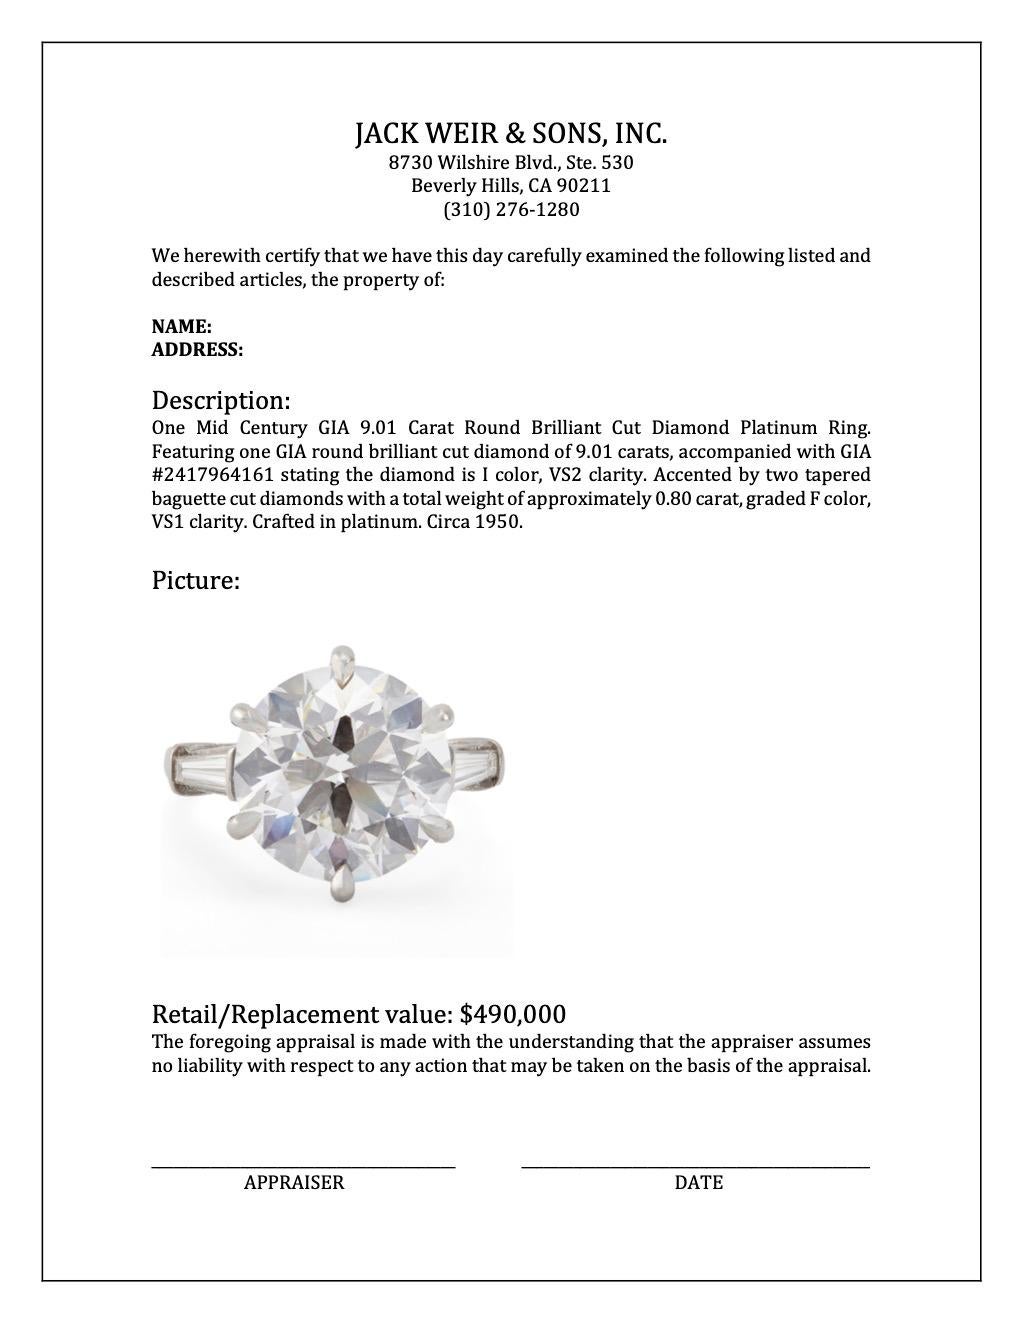 Mid Century GIA 9.01 Carat Round Brilliant Cut Diamond Platinum Ring For Sale 3